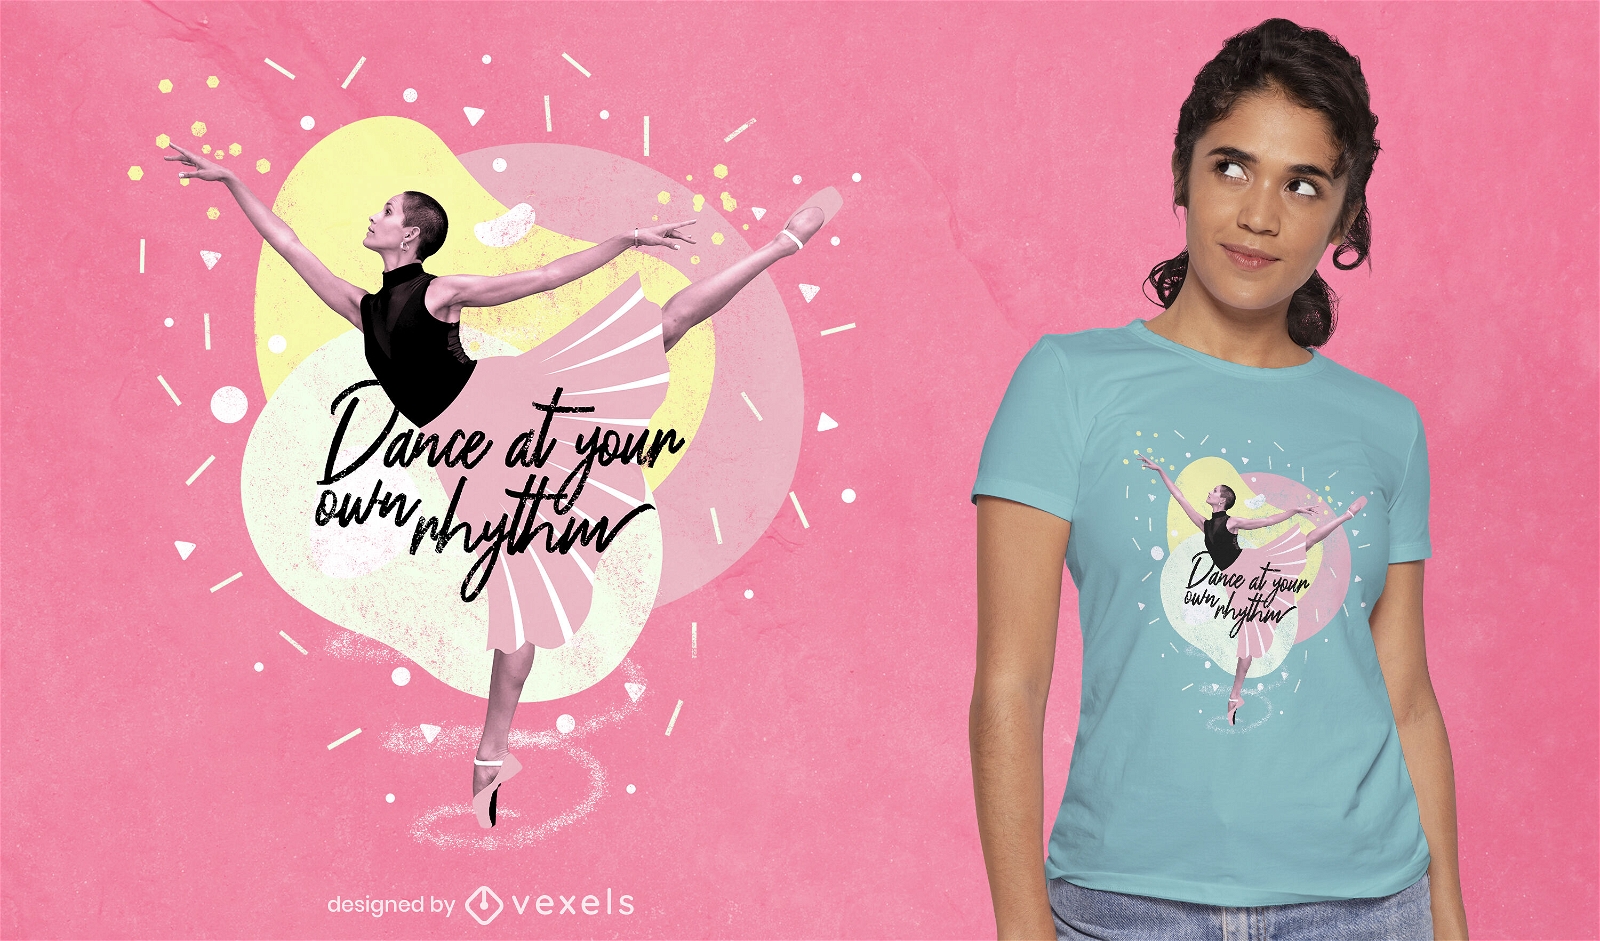 Ballet dancer girl photographic t-shirt psd